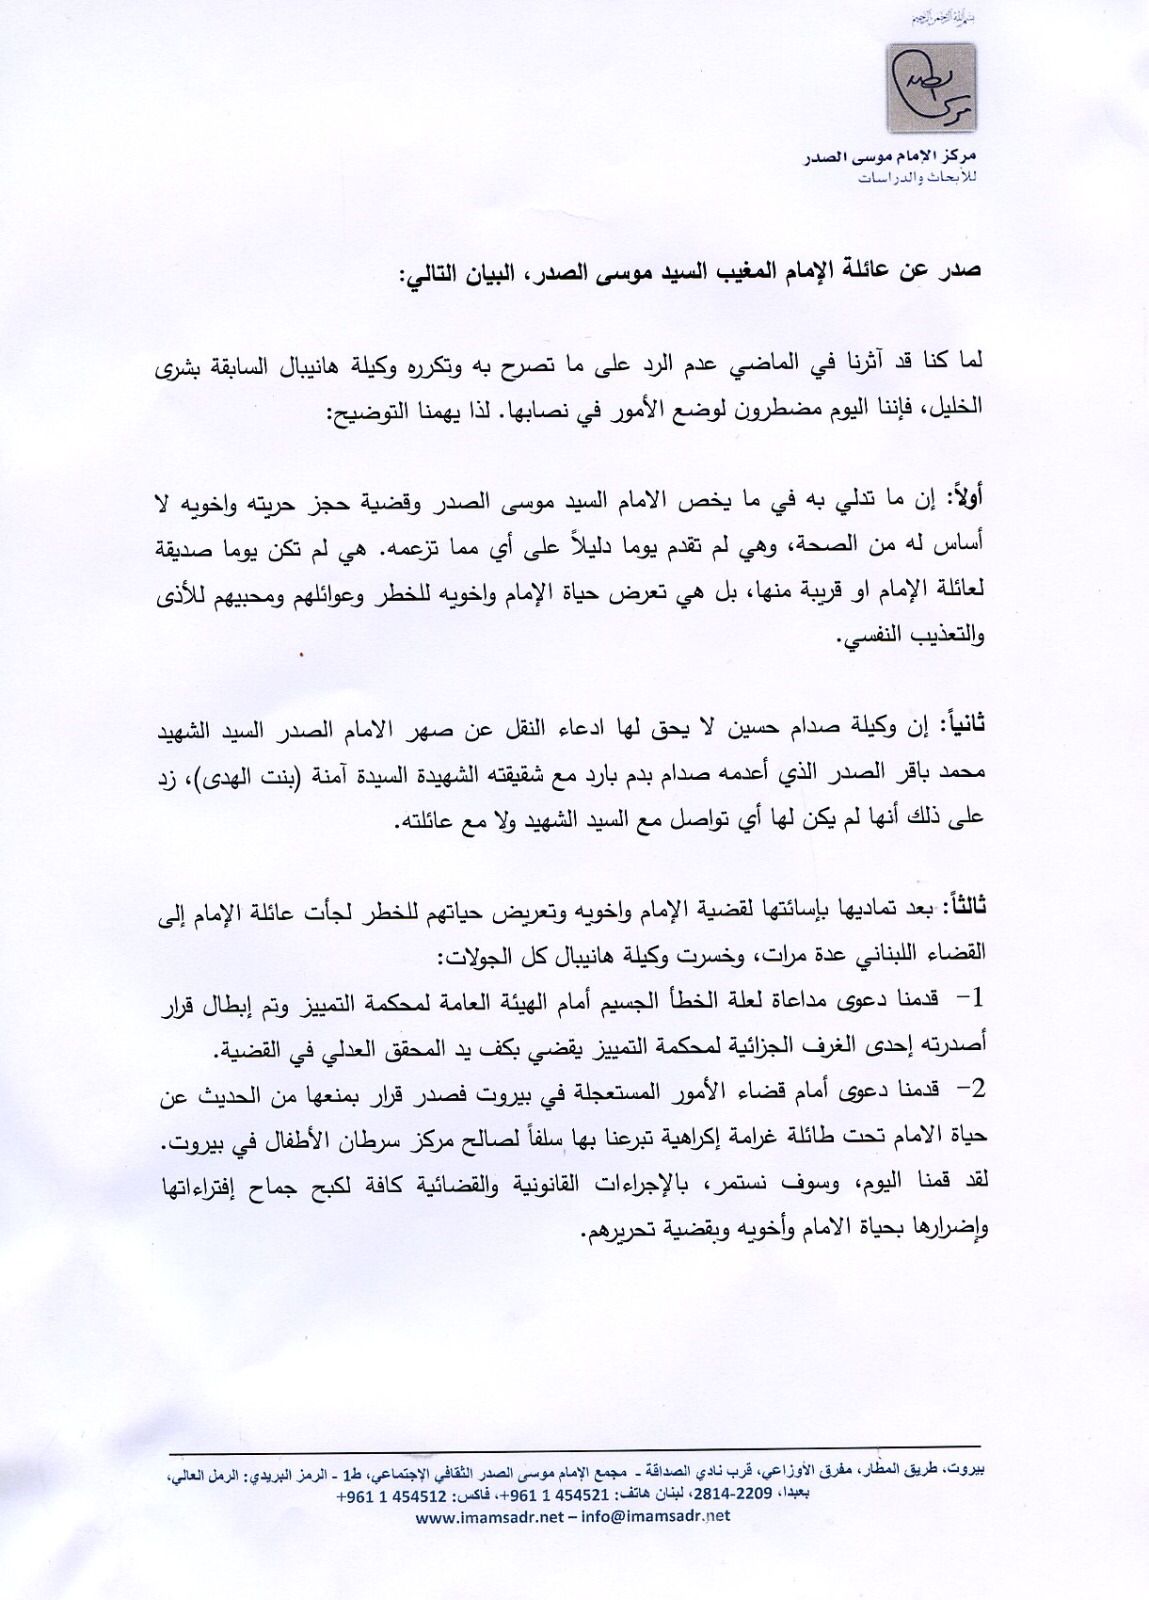 صدر عن عائلة الإمام المغيب السيد موسى الصدر، البيان التالي:*